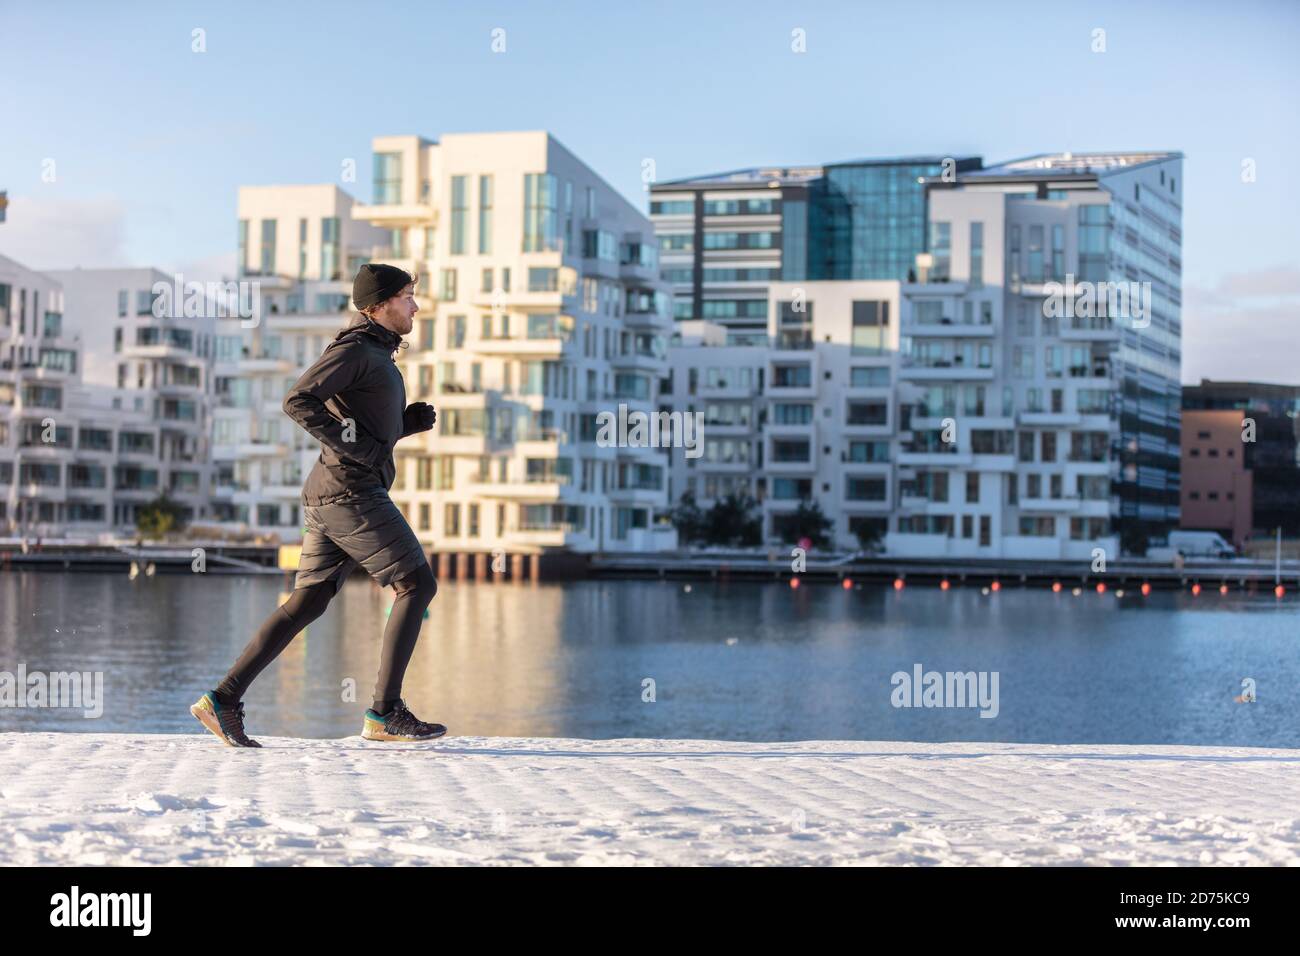 L'atleta di runner della città che corre in inverno fa jogging all'esterno sulla moderna via del porto urbano sul lungomare. Gestione di persone sane e vive attive Foto Stock